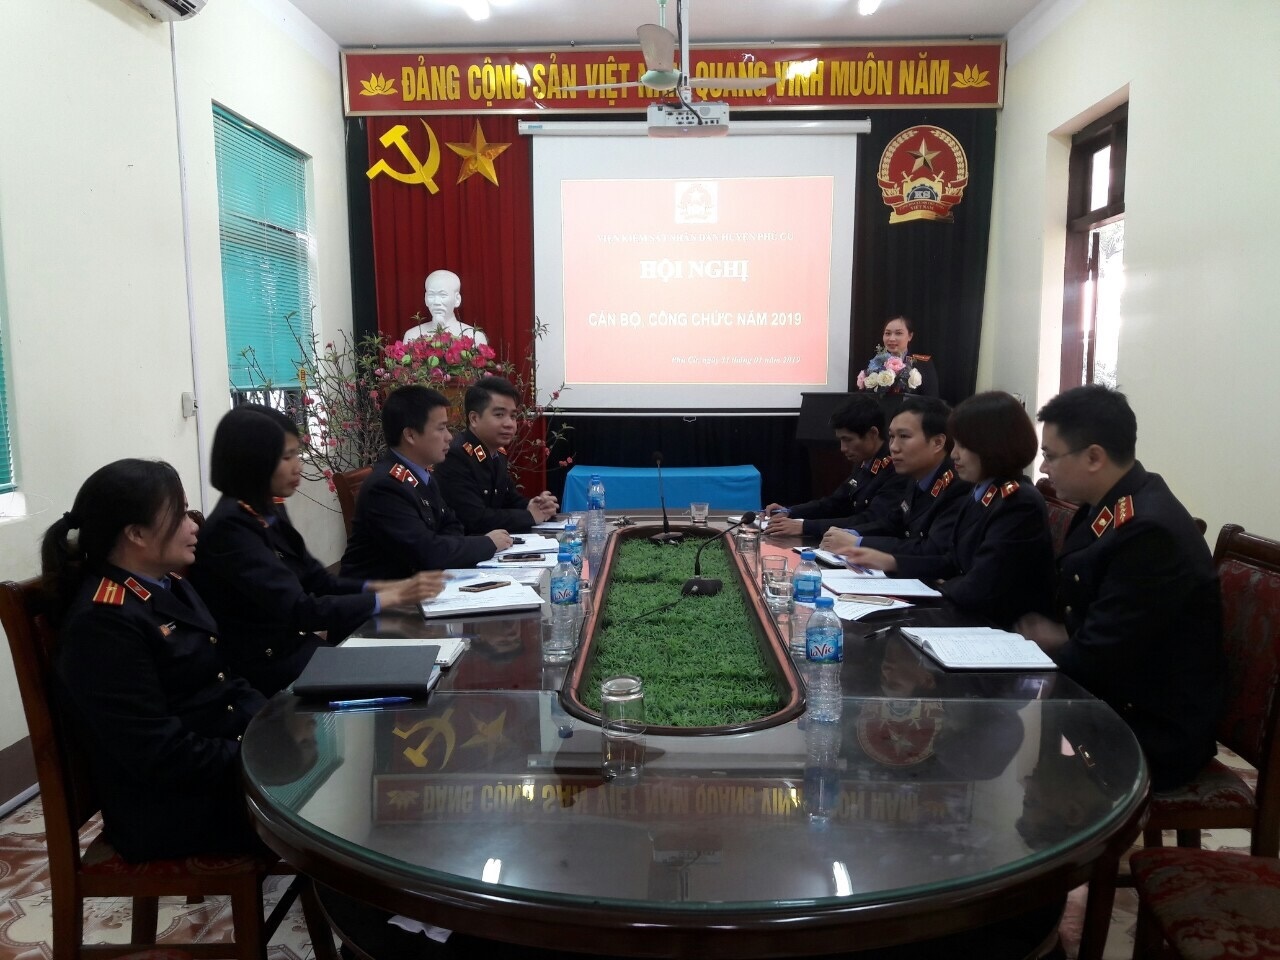 VKSND huyện Phù Cừ tổ chức Hội nghị Cán bộ công chức năm 2019